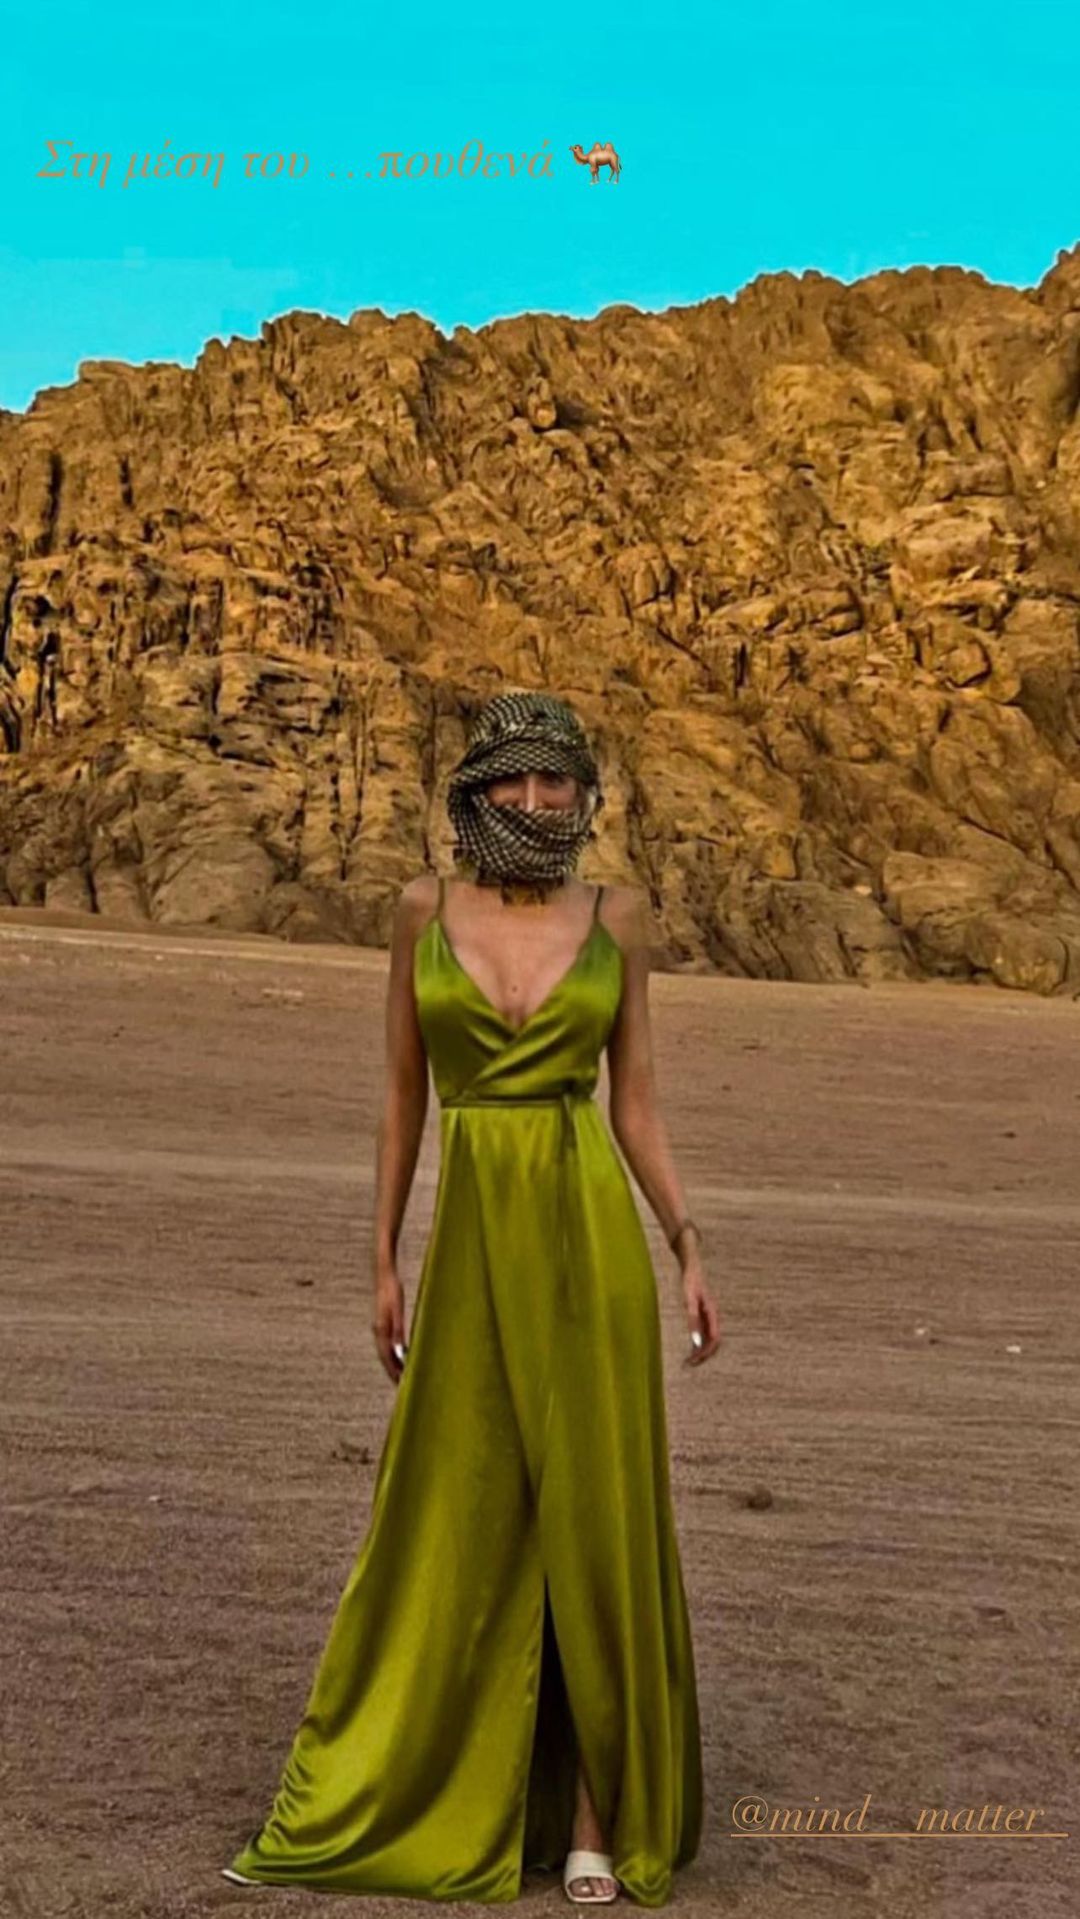 Κατερίνα Καινούργιου: Το φωτογραφικό άλμπουμ από το υπερλούξ ταξίδι της στην Έρημο με τον Νίκο Κοκλώνη 